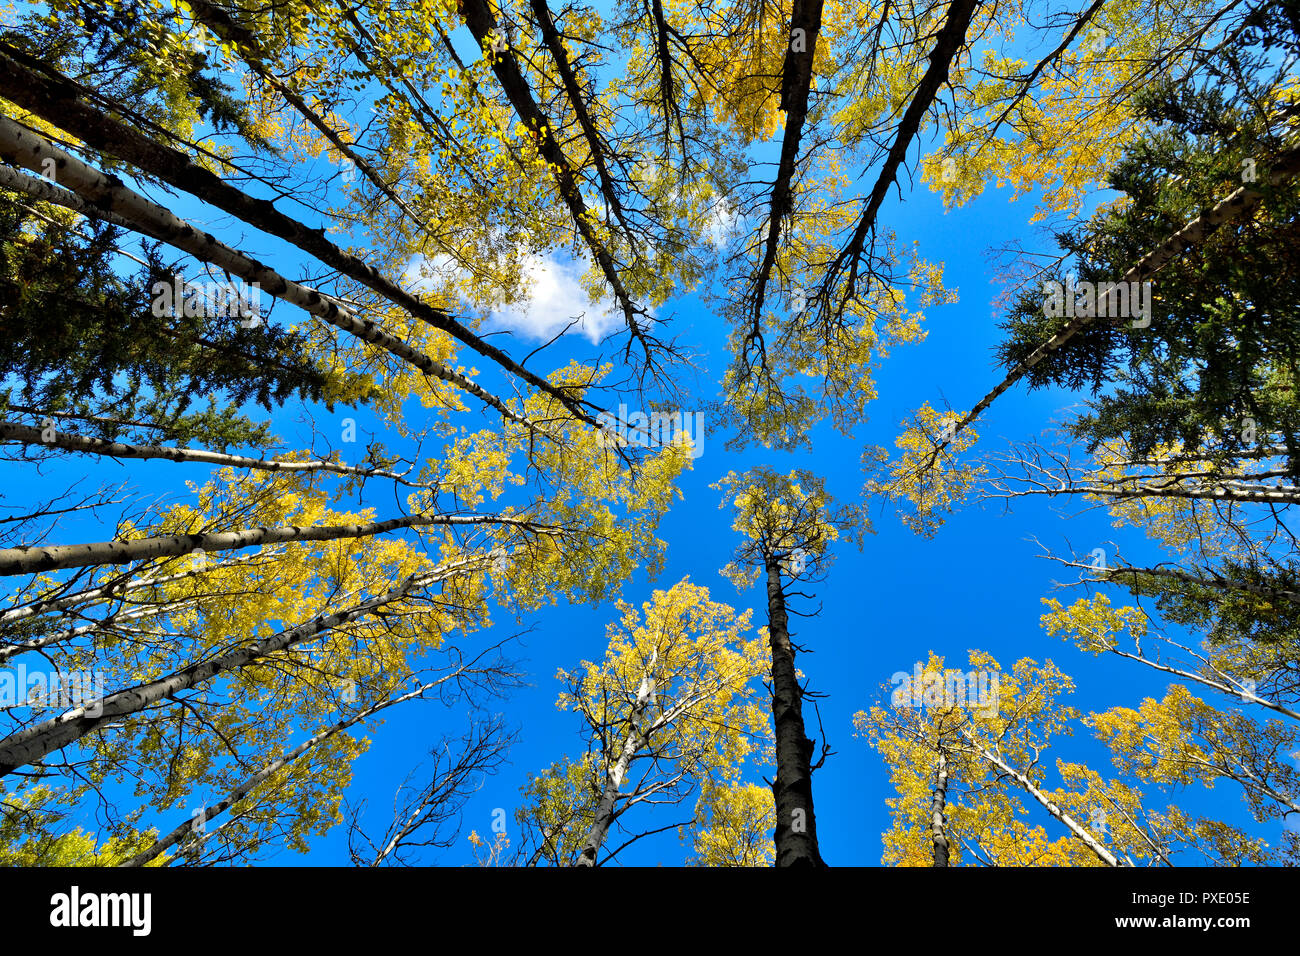 Ein horizontales Bild suchen, um sich an die Baumkronen eines gemischten Standplatz der Bäume vor blauem Himmel in ländlichen Alberta Kanada Stockfoto